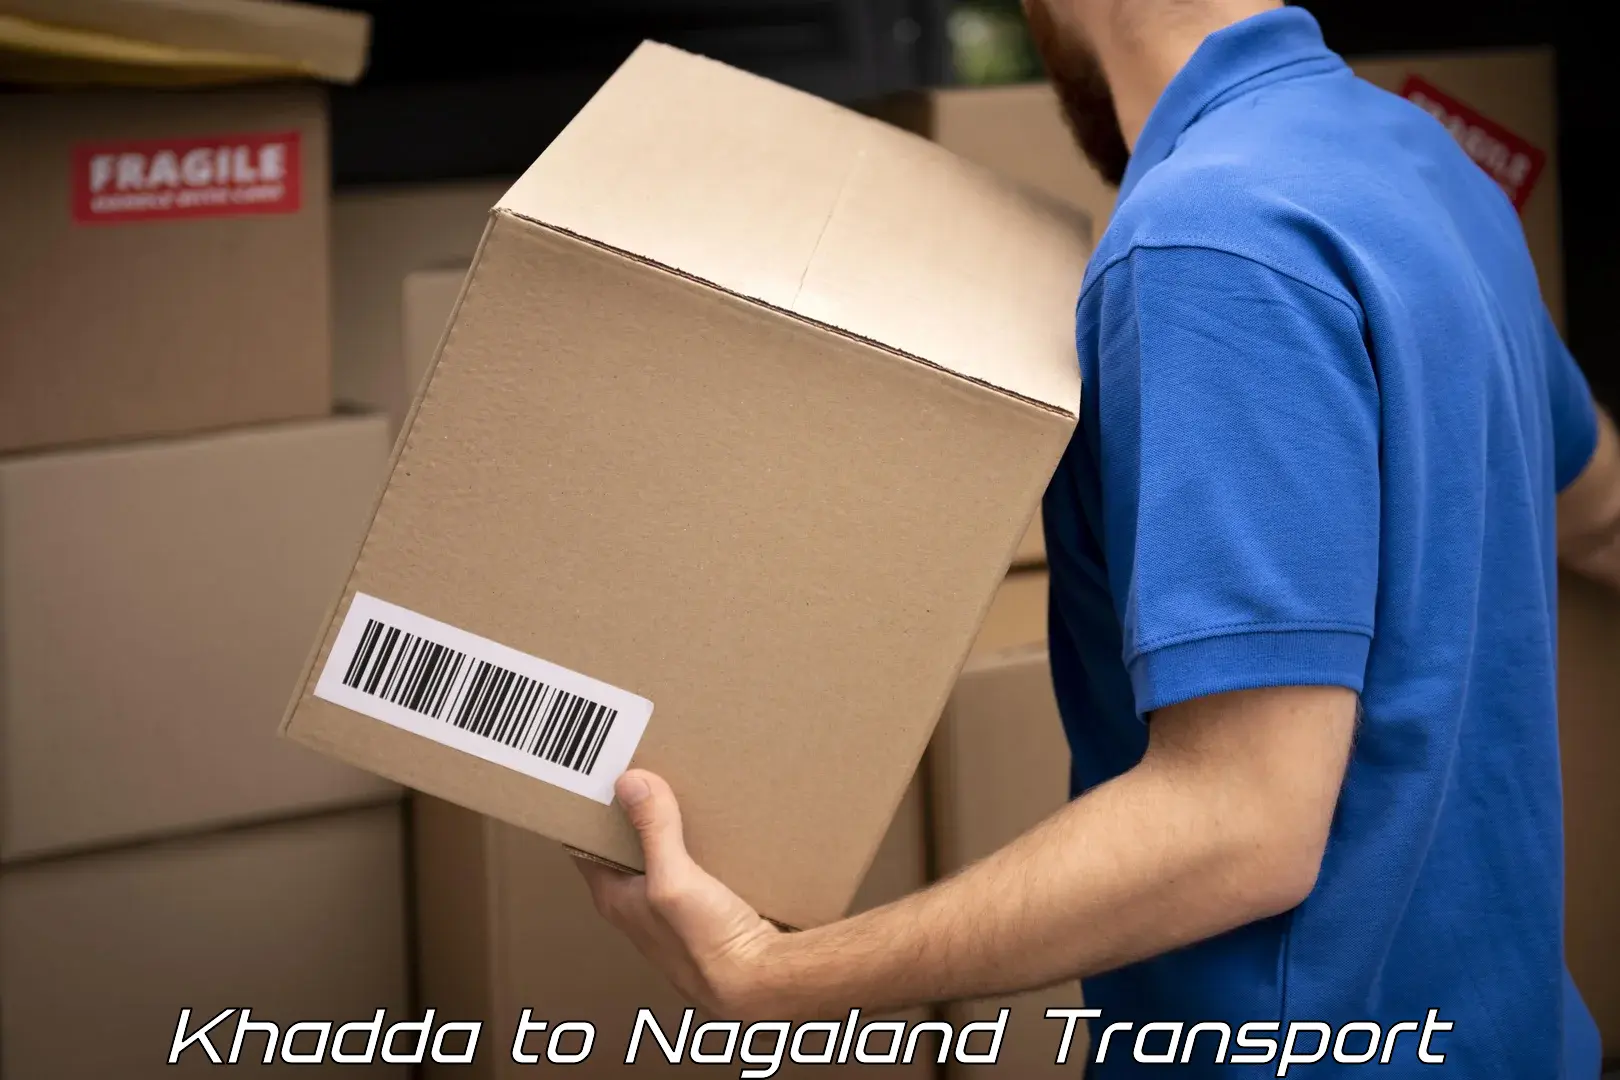 Transportation services Khadda to Nagaland